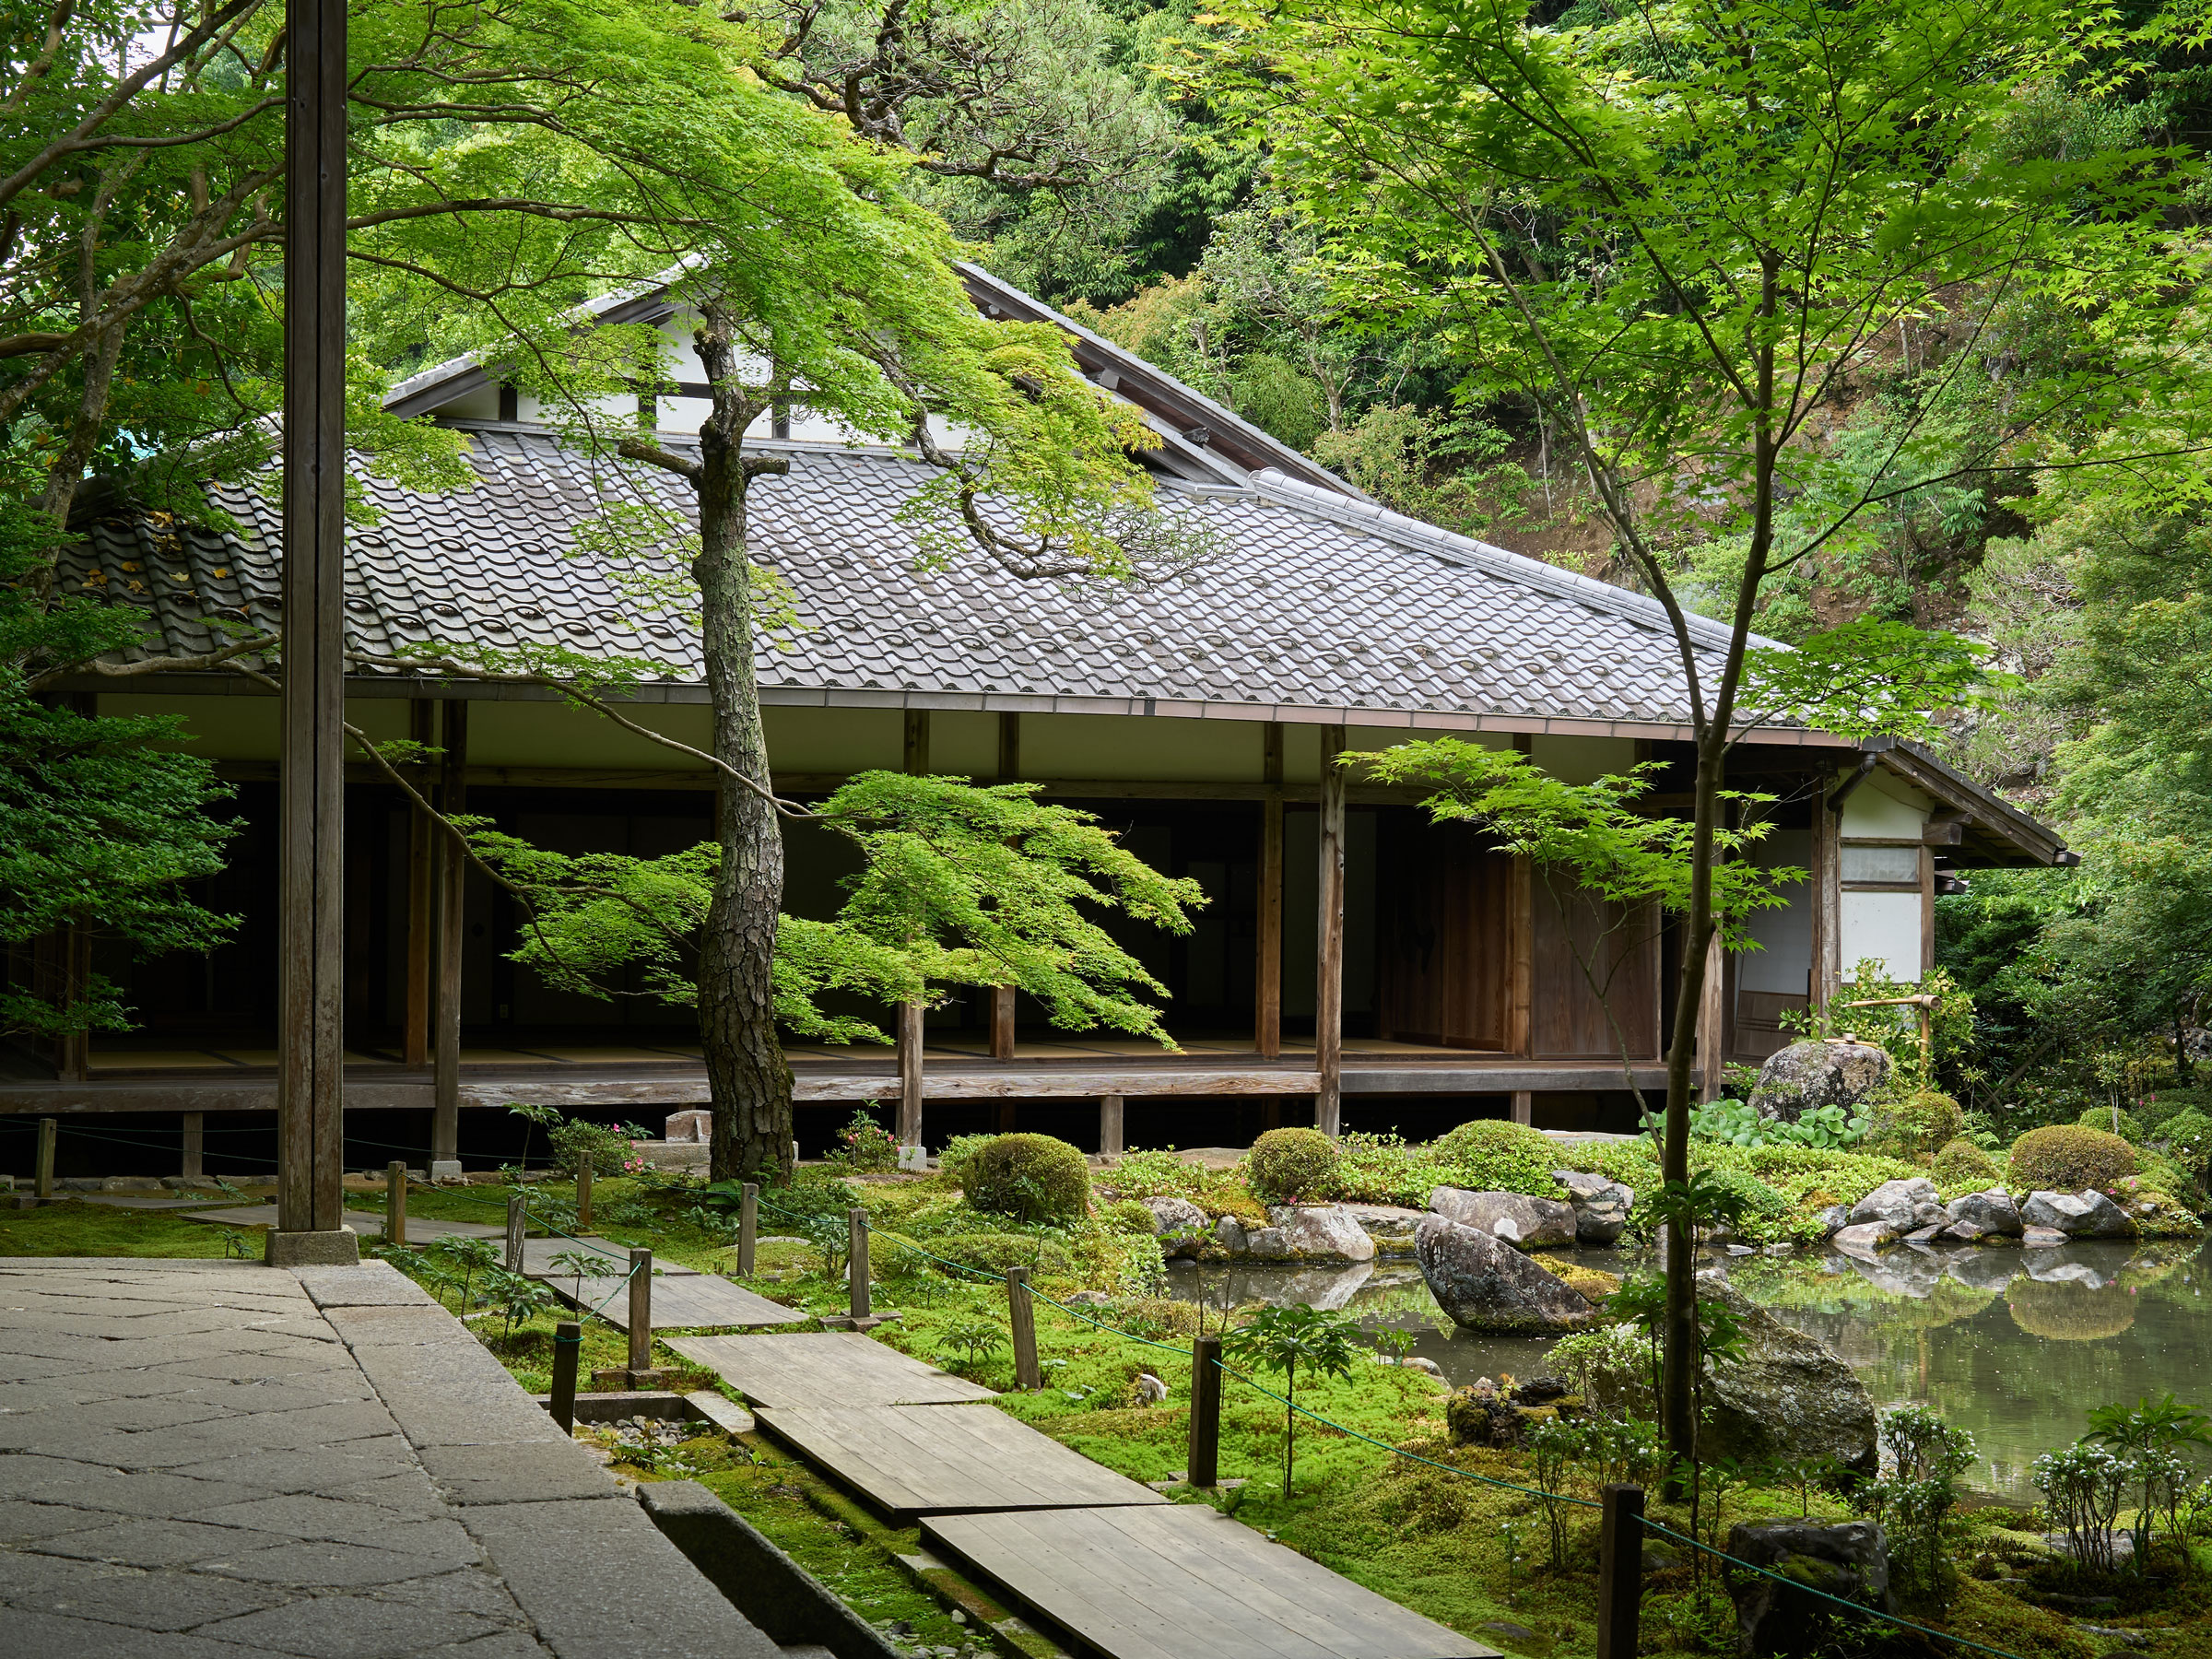 “30年目の京都旅”で癒しを堪能 新緑眩しい蓮華寺とスフェラのカフェ で心を整え、丁寧な時間を過ごす